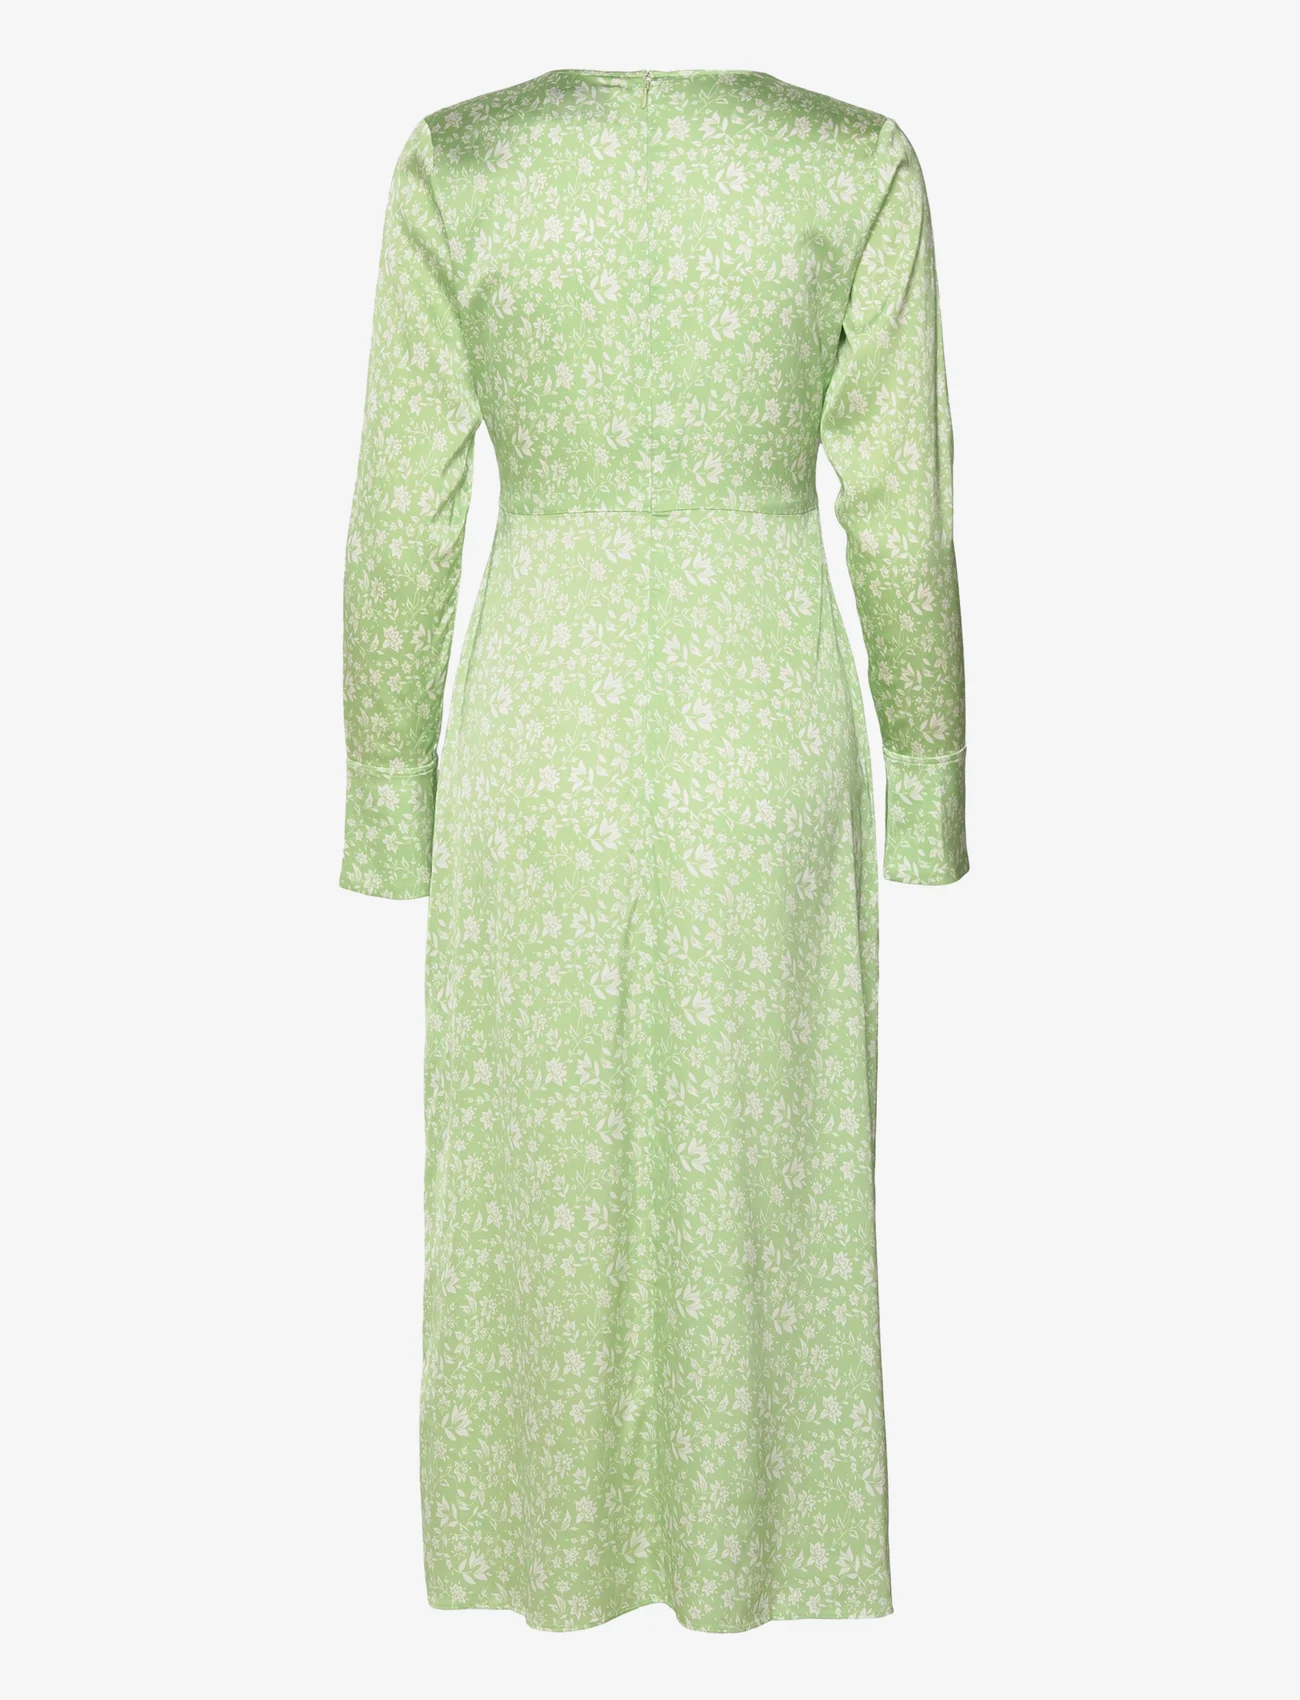 MAUD - Eve Dress - festtøj til outletpriser - faded green - 1